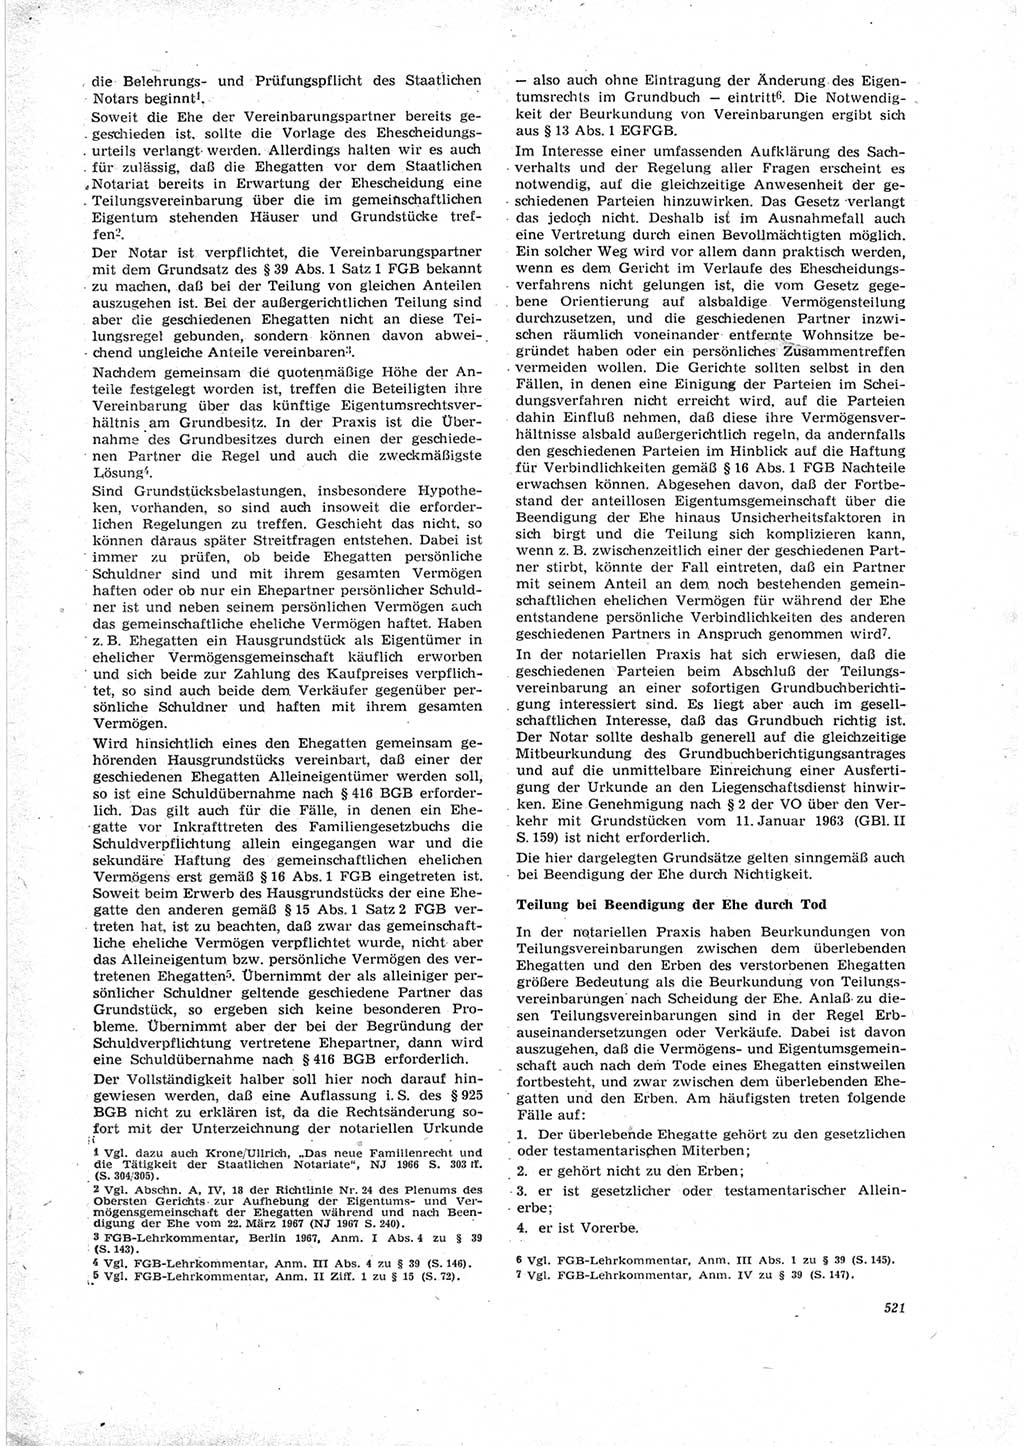 Neue Justiz (NJ), Zeitschrift für Recht und Rechtswissenschaft [Deutsche Demokratische Republik (DDR)], 23. Jahrgang 1969, Seite 521 (NJ DDR 1969, S. 521)